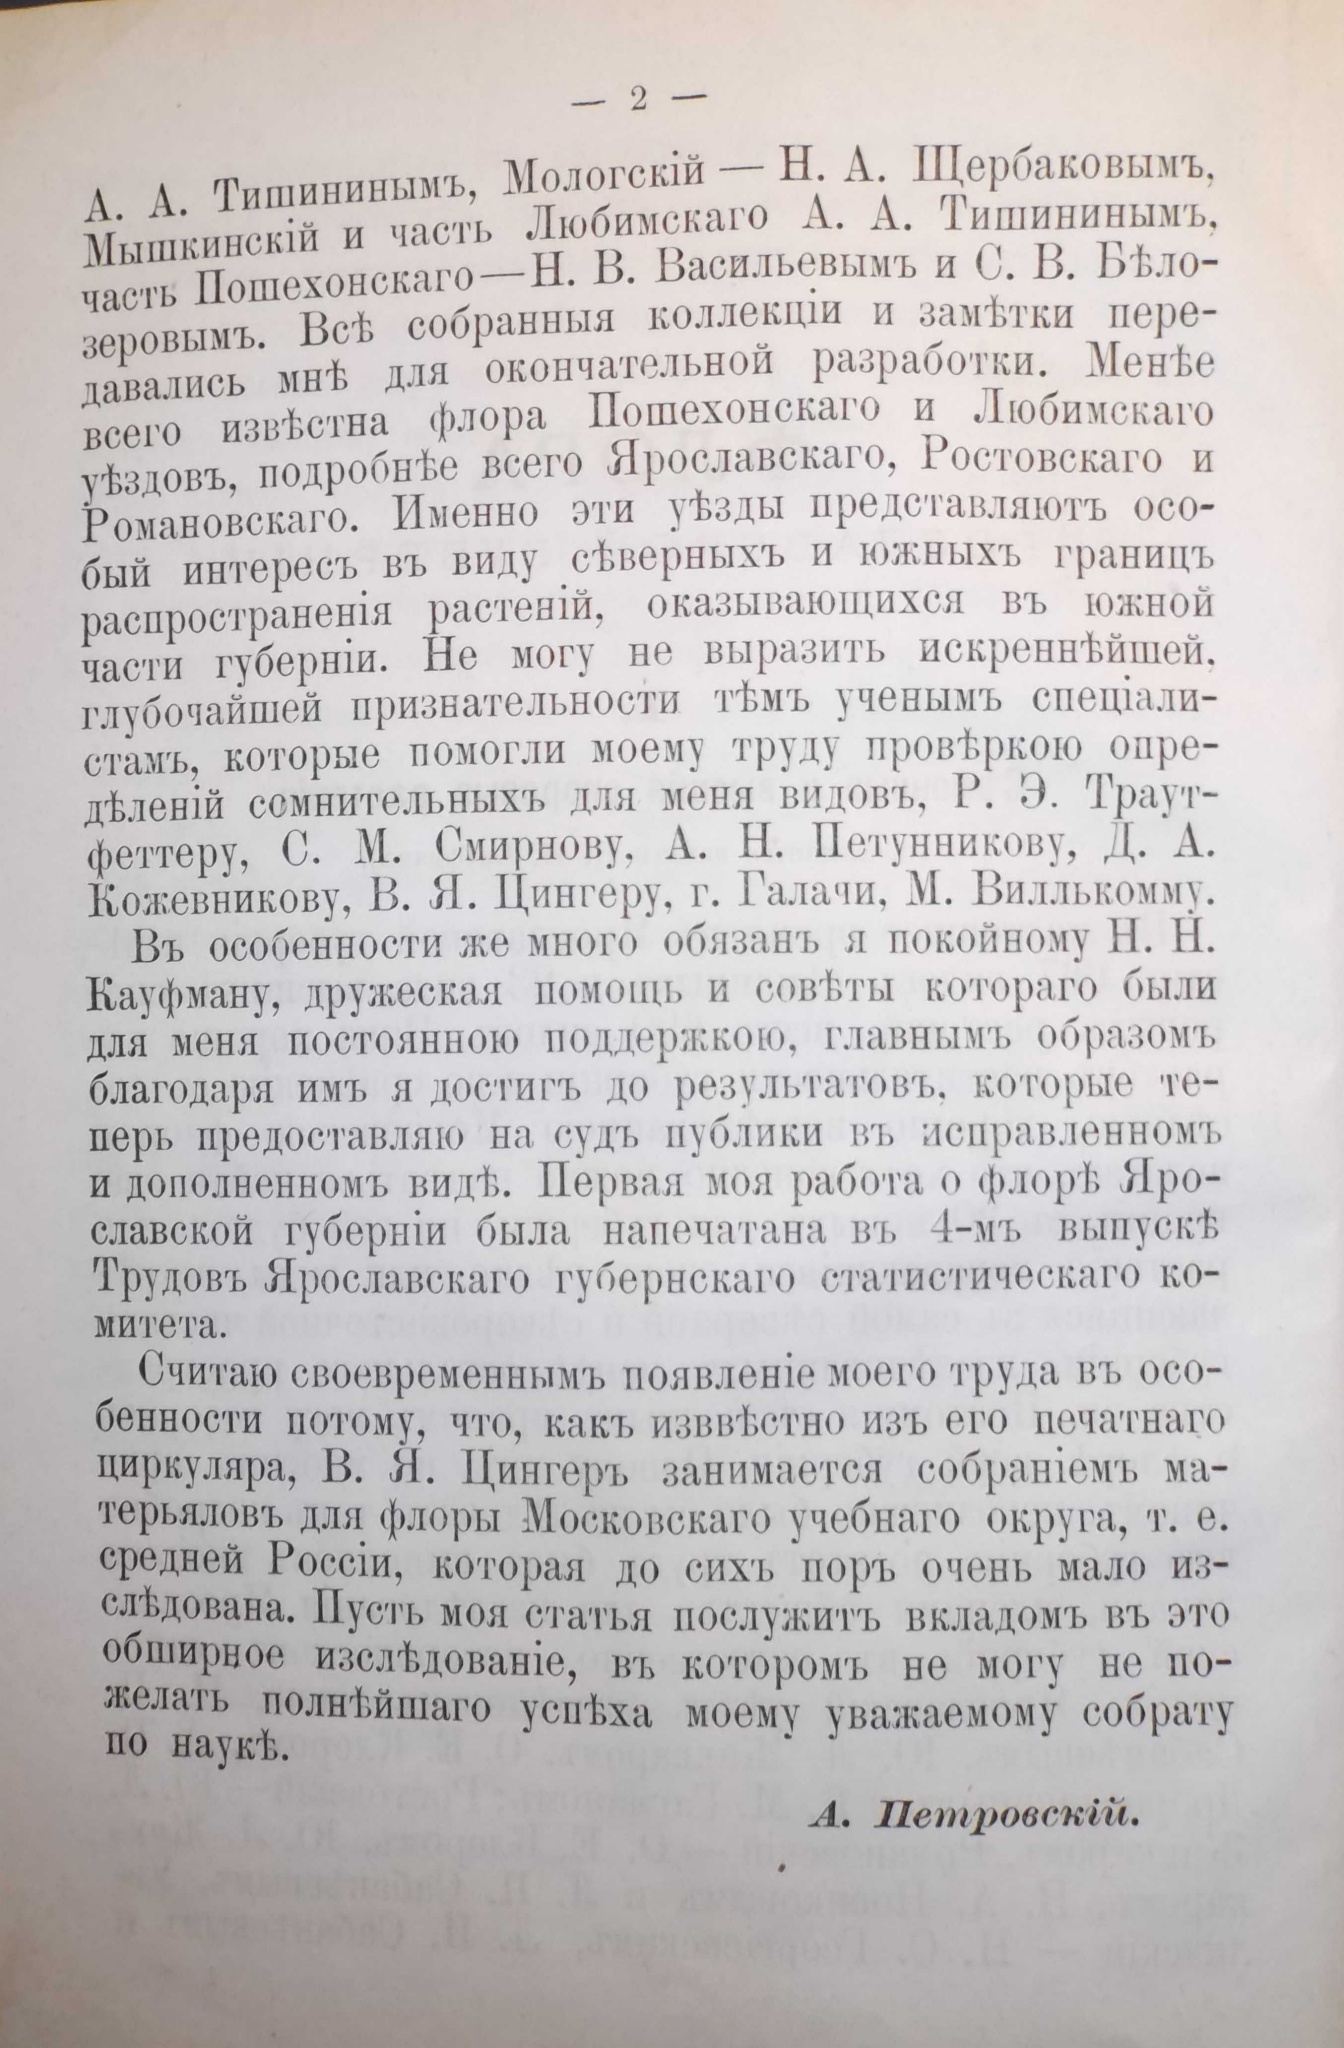 Вторая страница статьи А. С. Петровского «Флора Ярославской губернии».